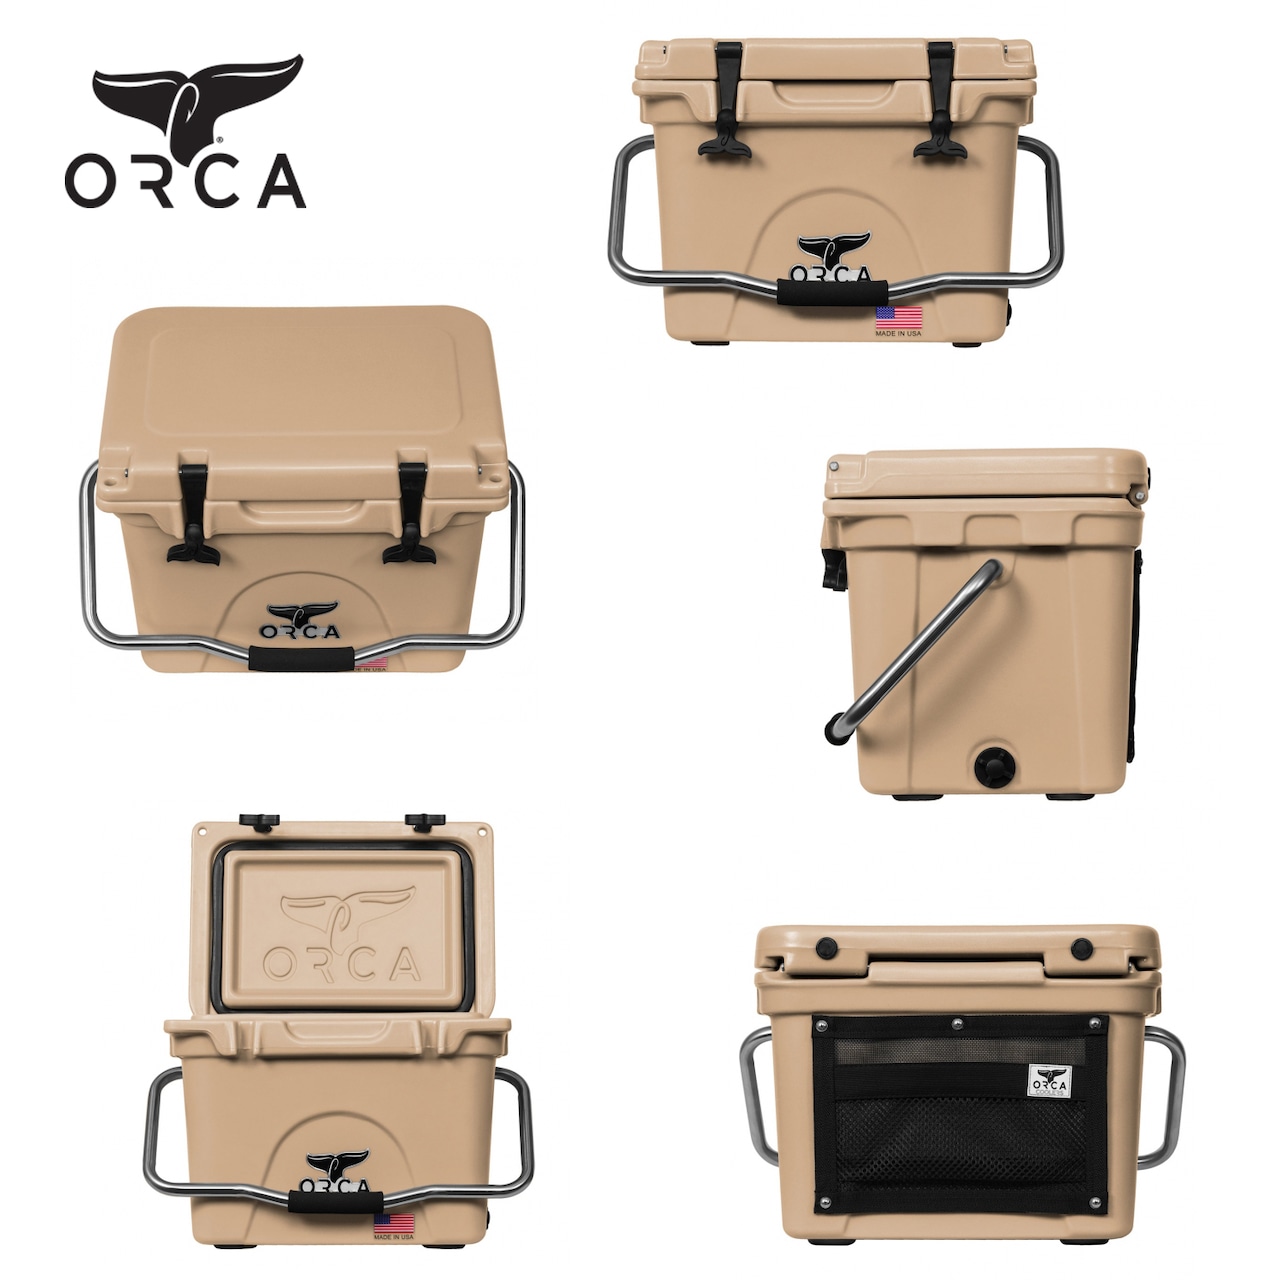 ORCA Coolers 20 Quart オルカ クーラー ボックス キャンプ用品 アウトドア キャンプ グッズ 保冷 クッキング ドリンク オルカクーラーズジャパン